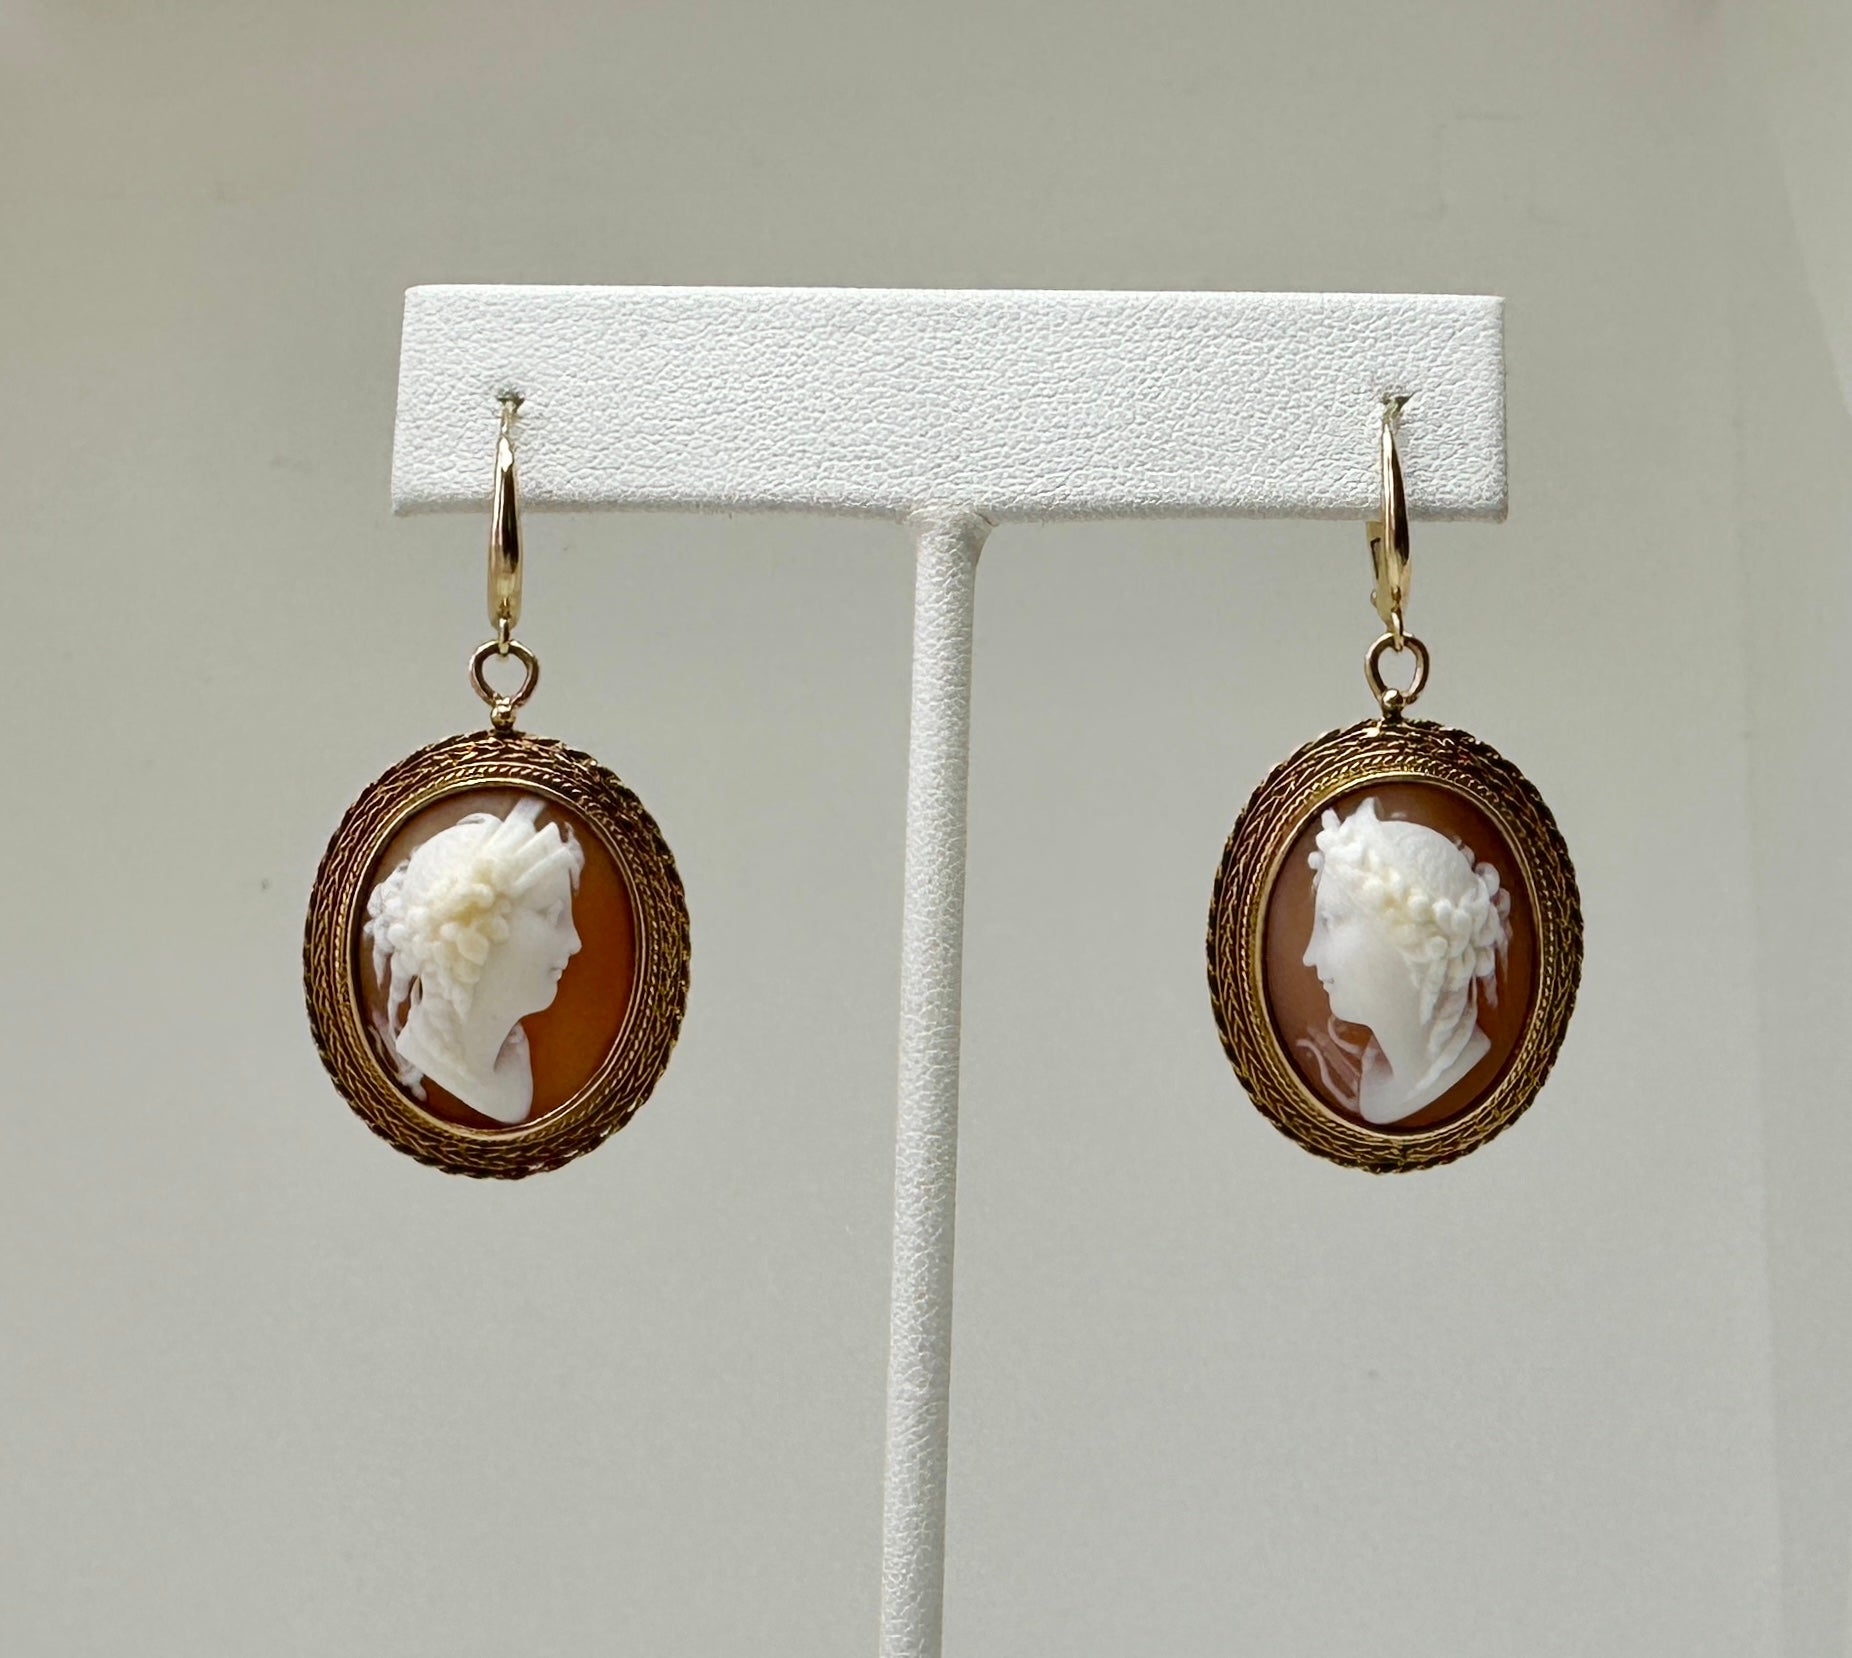 Dies ist ein spektakuläres Paar von antiken viktorianischen Göttin Frau Shell Cameo Anhänger baumeln Tropfen Ohrringe in 10-14 Karat Gold.   Diese atemberaubenden Ohrringe sind von höchster Qualität.  Sie haben außergewöhnliche handgeschnitzte